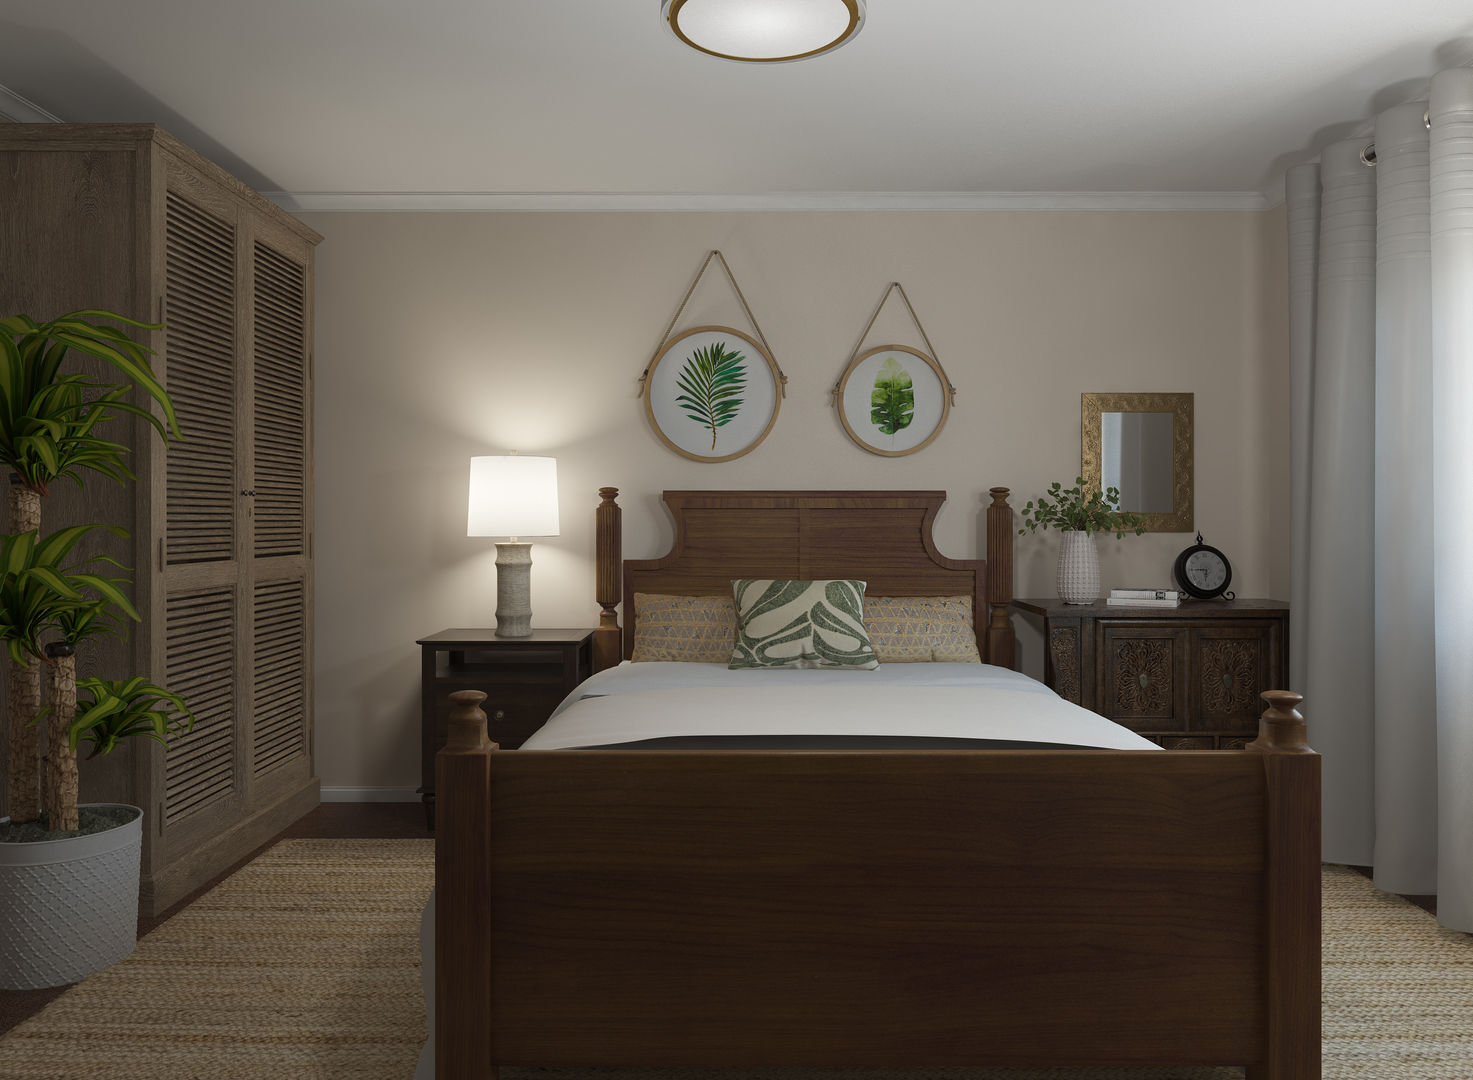 Ideas de decoración rústica, Glancing EYE - Modelado y diseño 3D Glancing EYE - Modelado y diseño 3D Country style bedroom